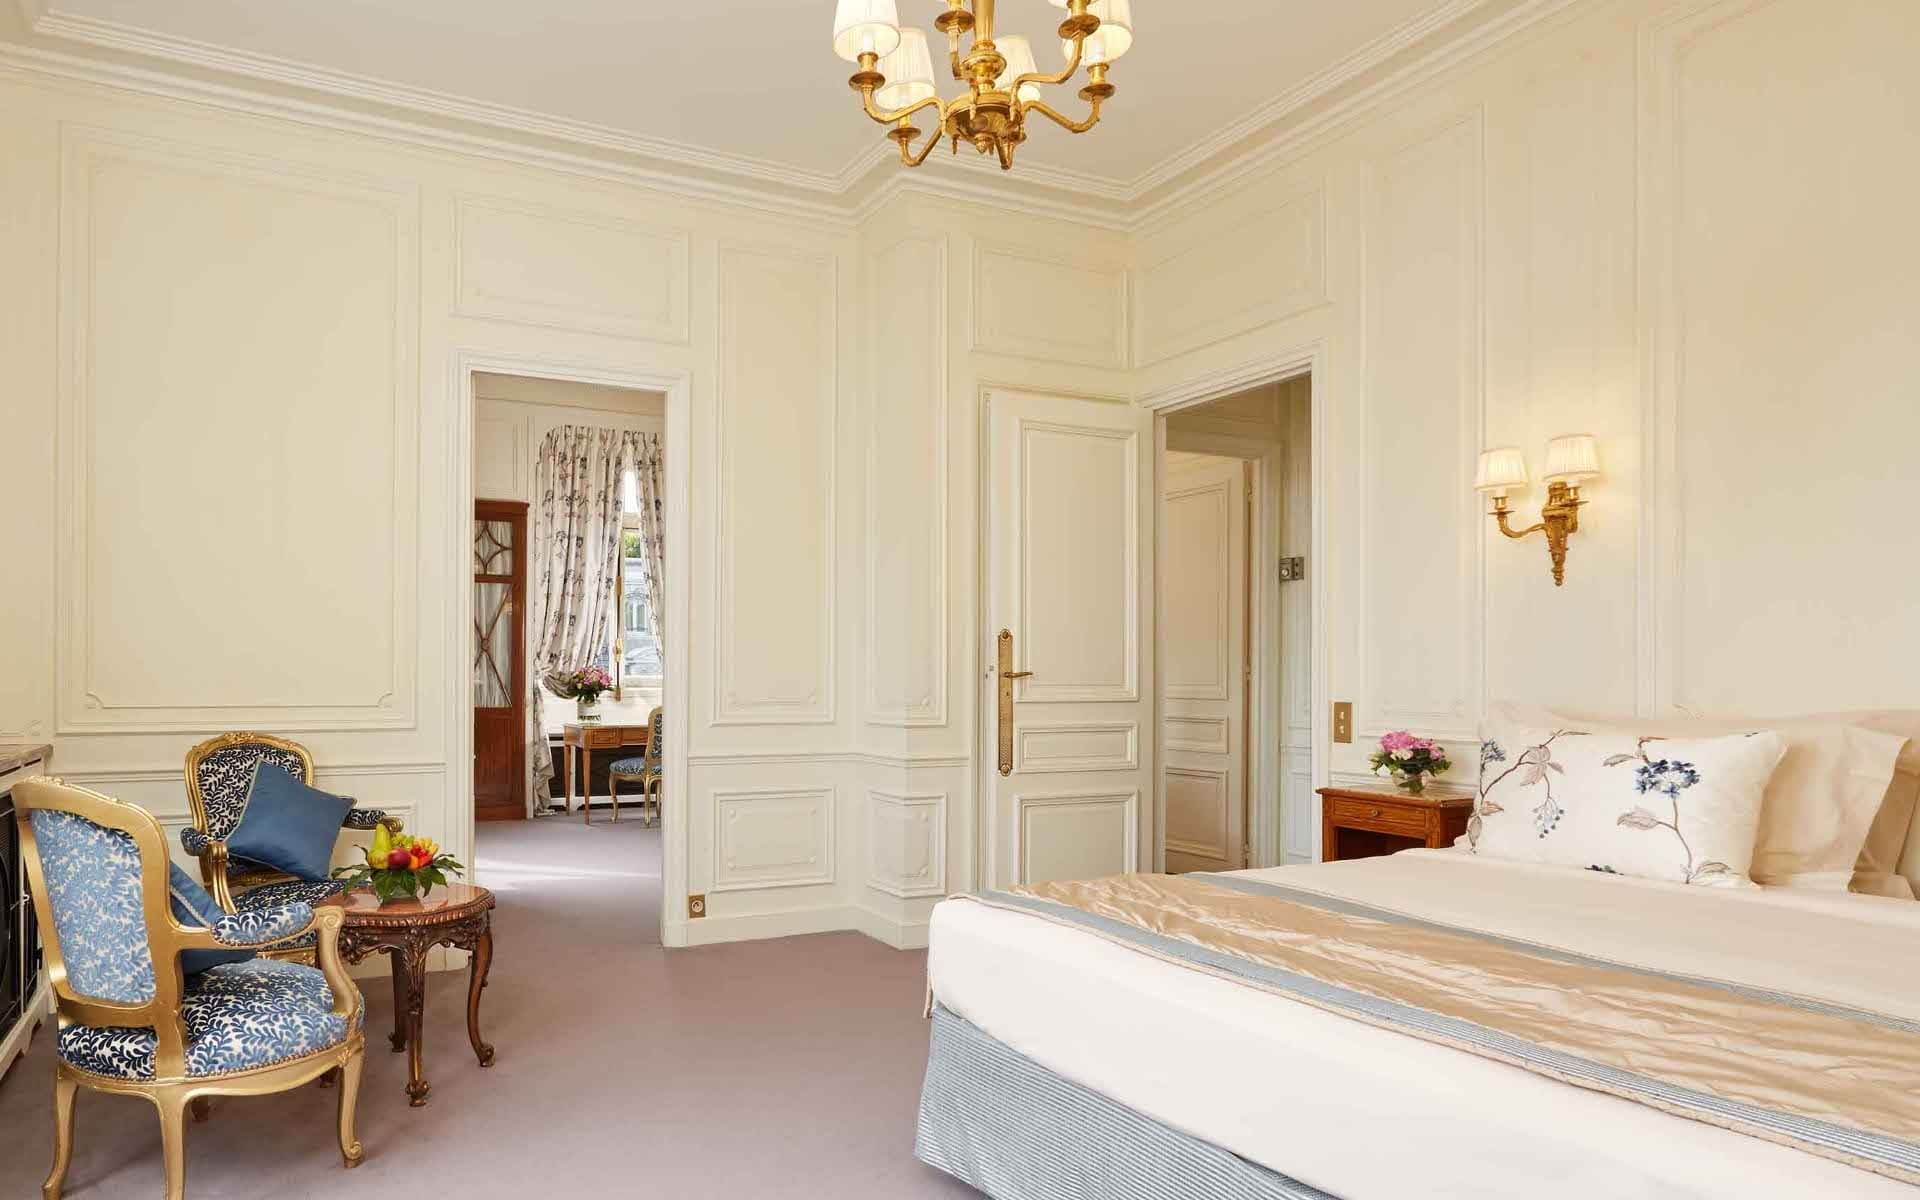 266/5-Suites/suite-terrasse-tour-eiffel/Suite Tour Eiffel Bedroom 1 -  Hotel Raphael Paris.jpg